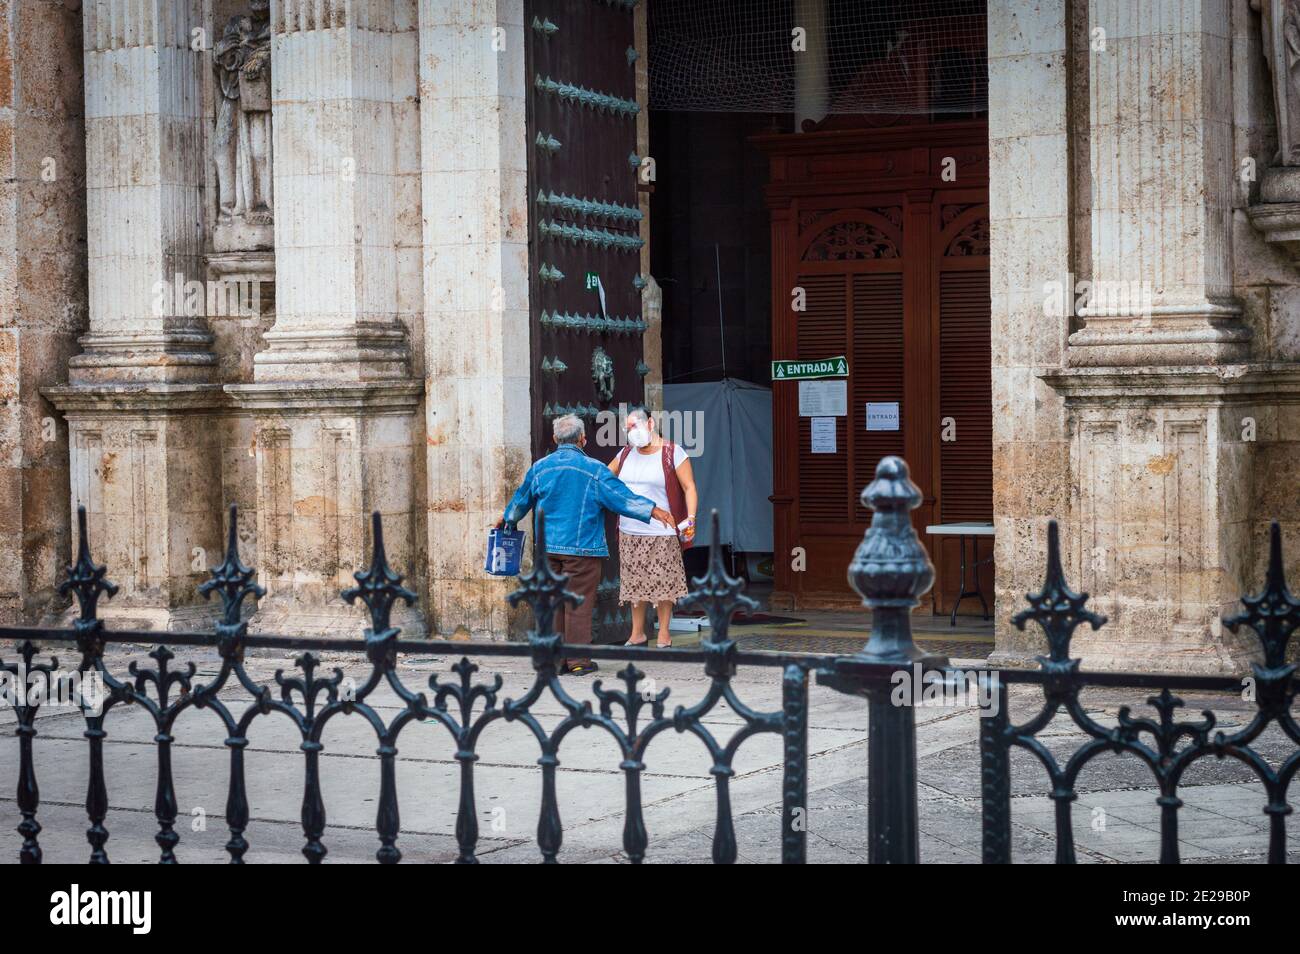 Neues normales Mexiko, Eingang der Kathedrale in Merida, Yucatan. Desinfektionsmittel für Gel und Temperaturscreening während der Covid-Pandemie. Stockfoto